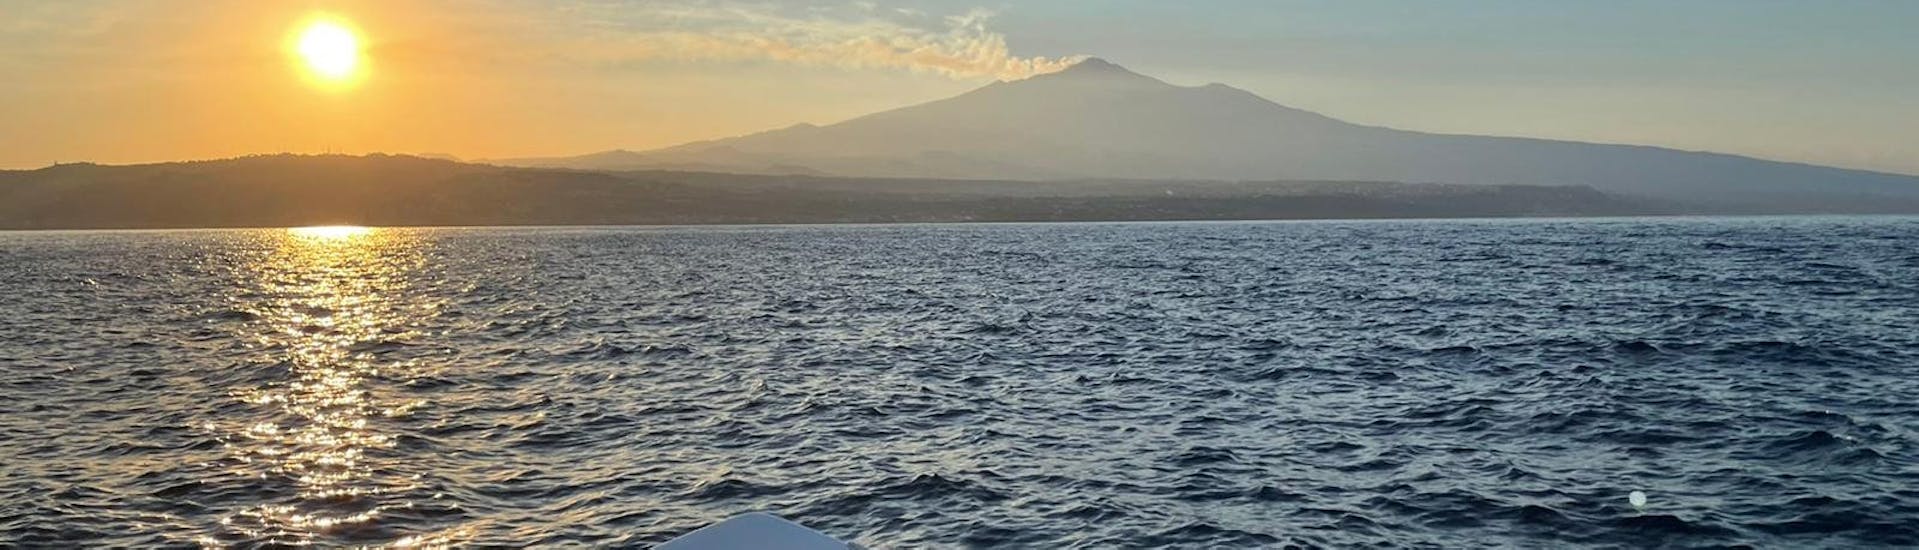 Le coucher de soleil sur l'Etna vu du bateau de Navigando per Trezza pendant la balade en bateau d'Aci Trezza avec Apéritif.